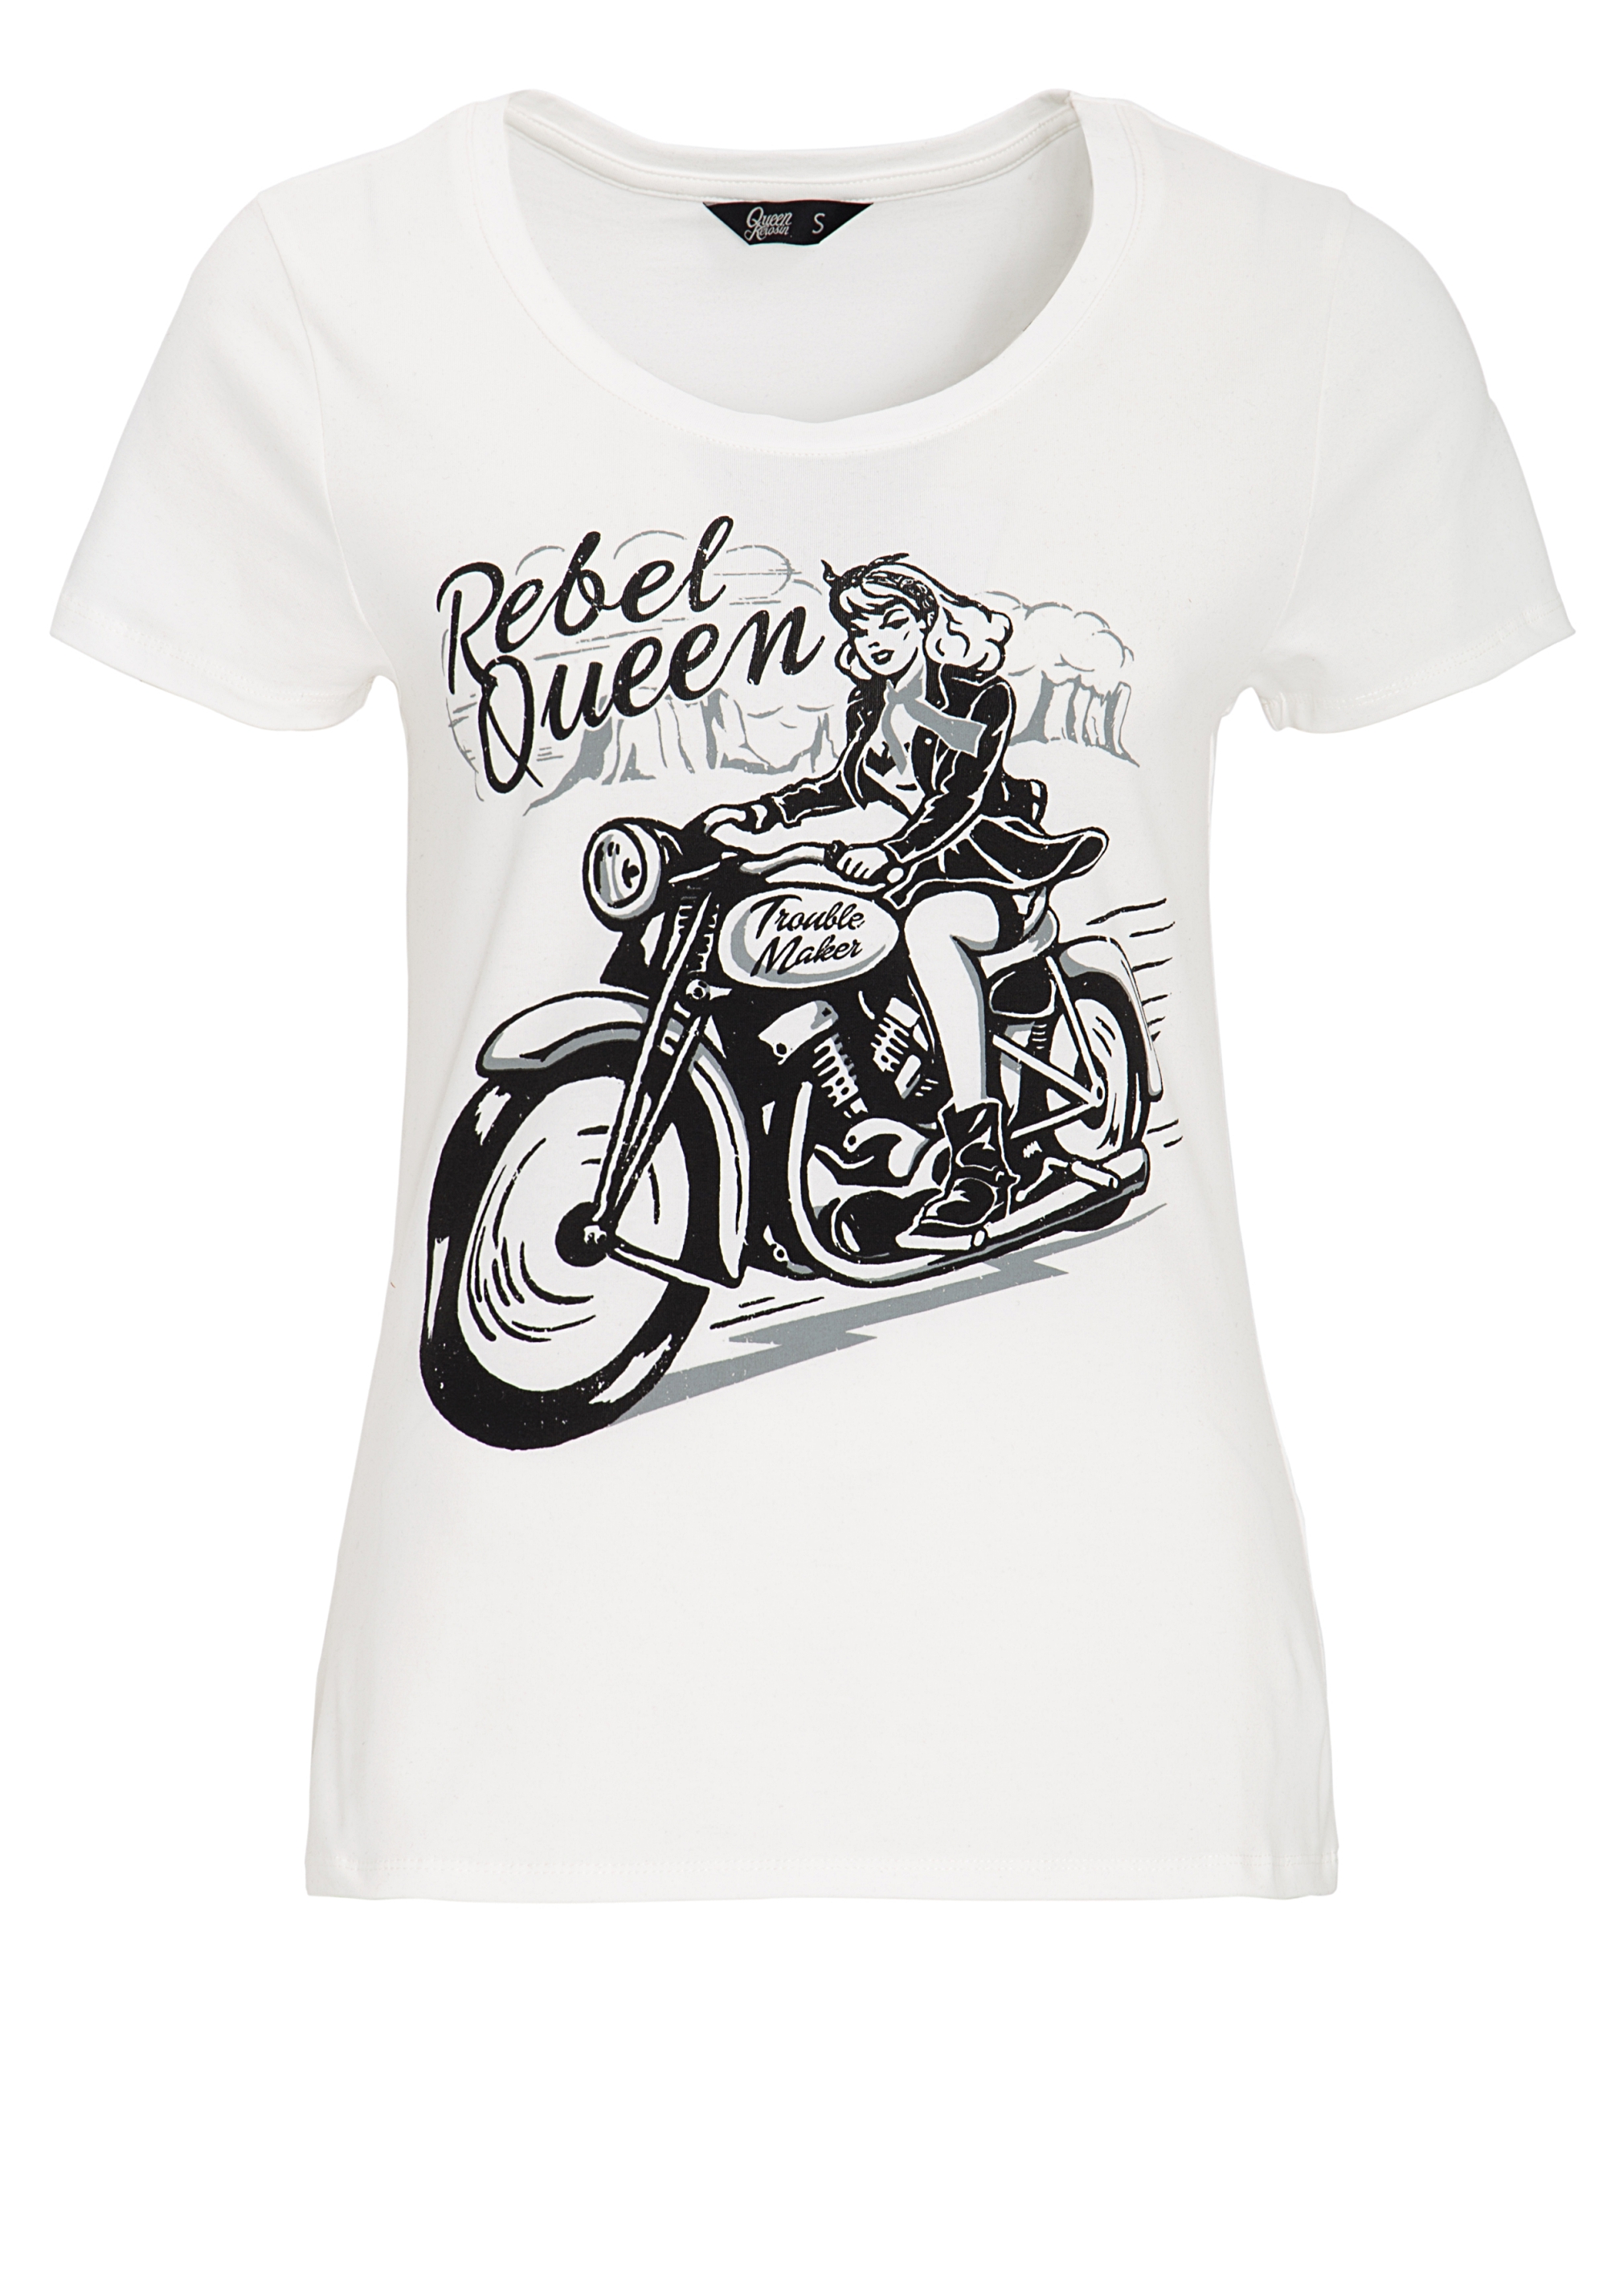 Queen Kerosin T-Shirt - Rebel Queen XL